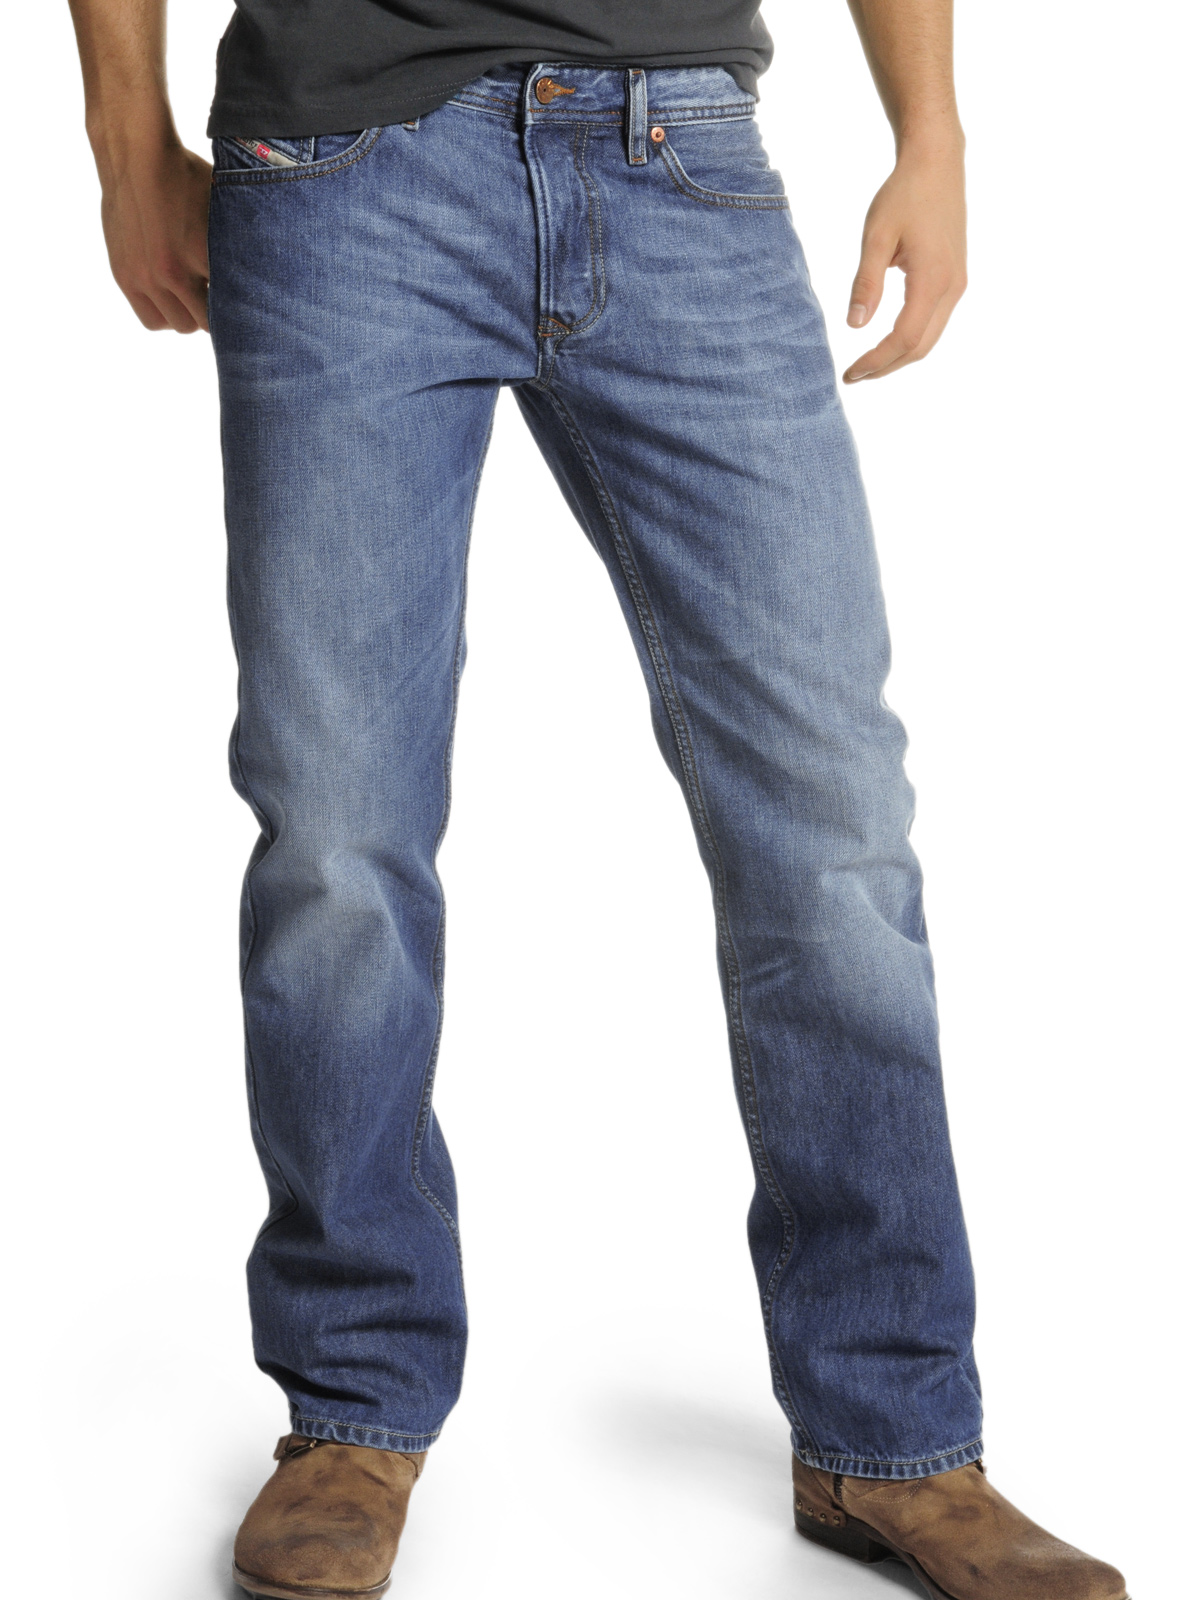 Какой длины должны быть джинсы мужские прямые